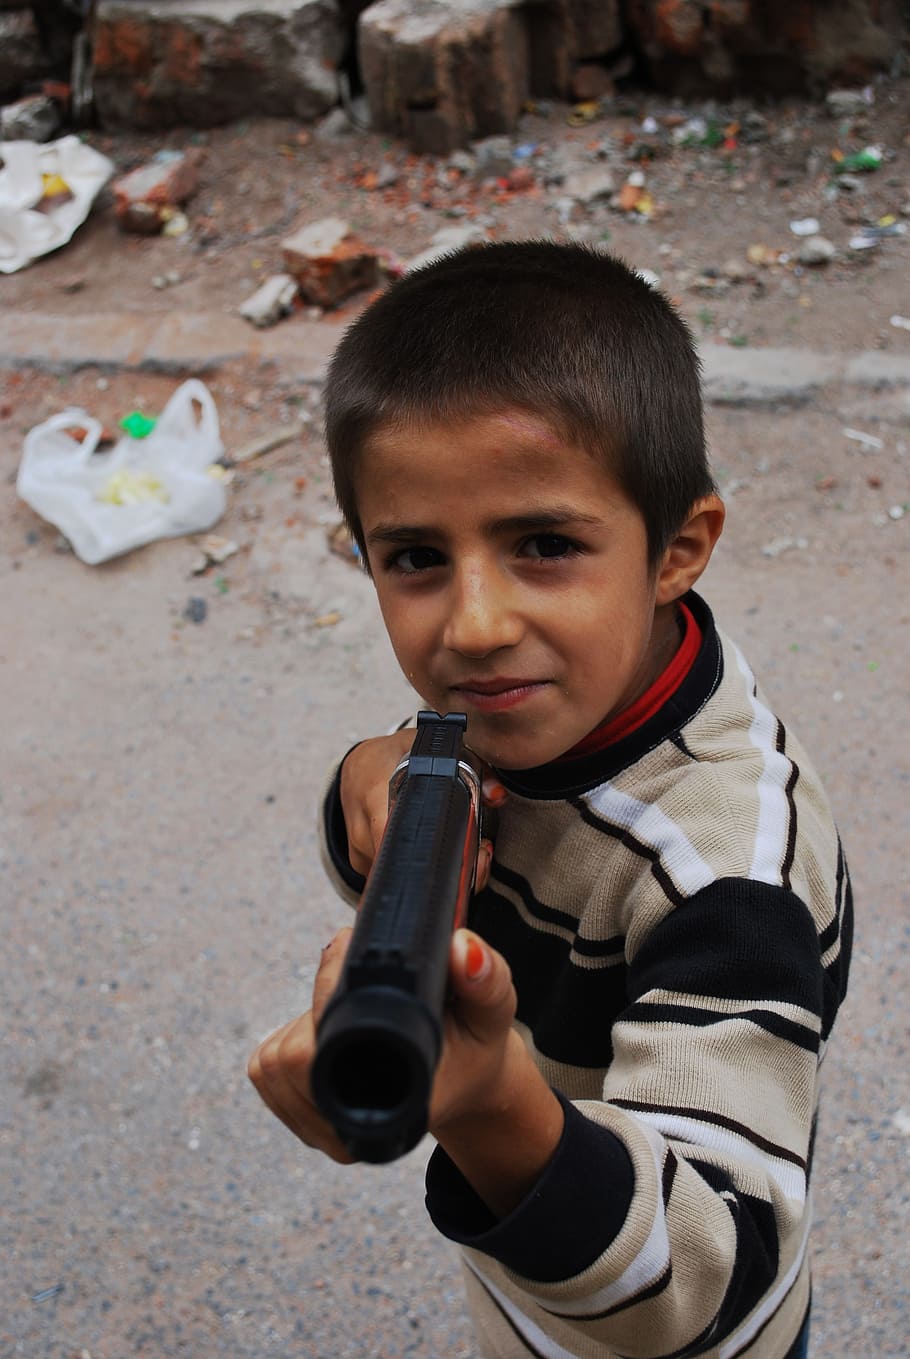 boy holding pistol toy, gun, pointing, smiling, trash, child